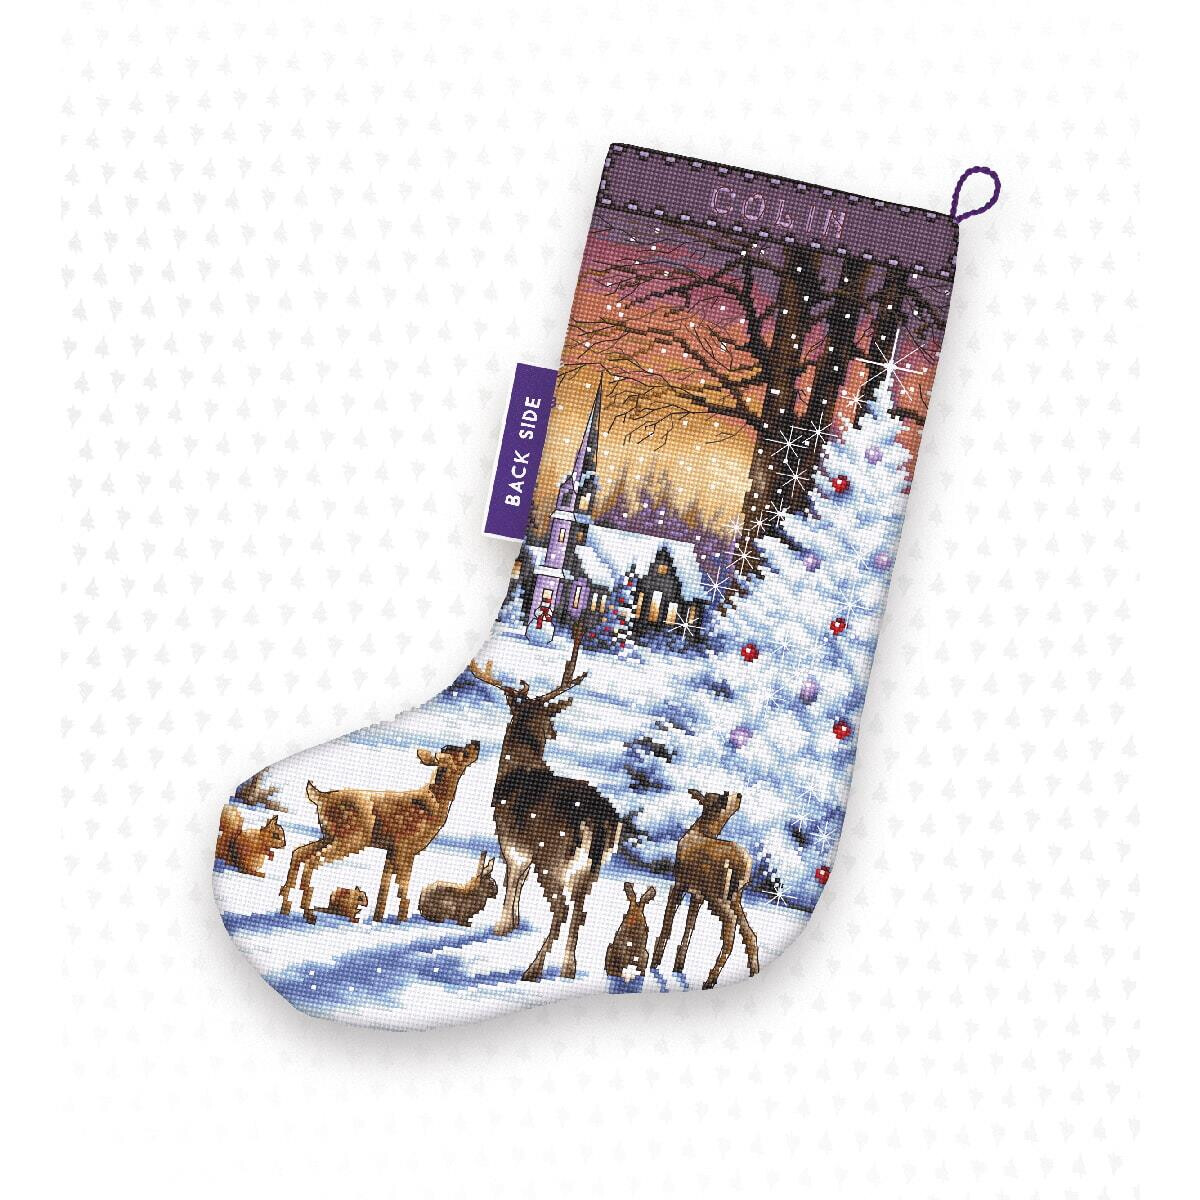 Una calza di Natale con un paesaggio invernale in cui i...